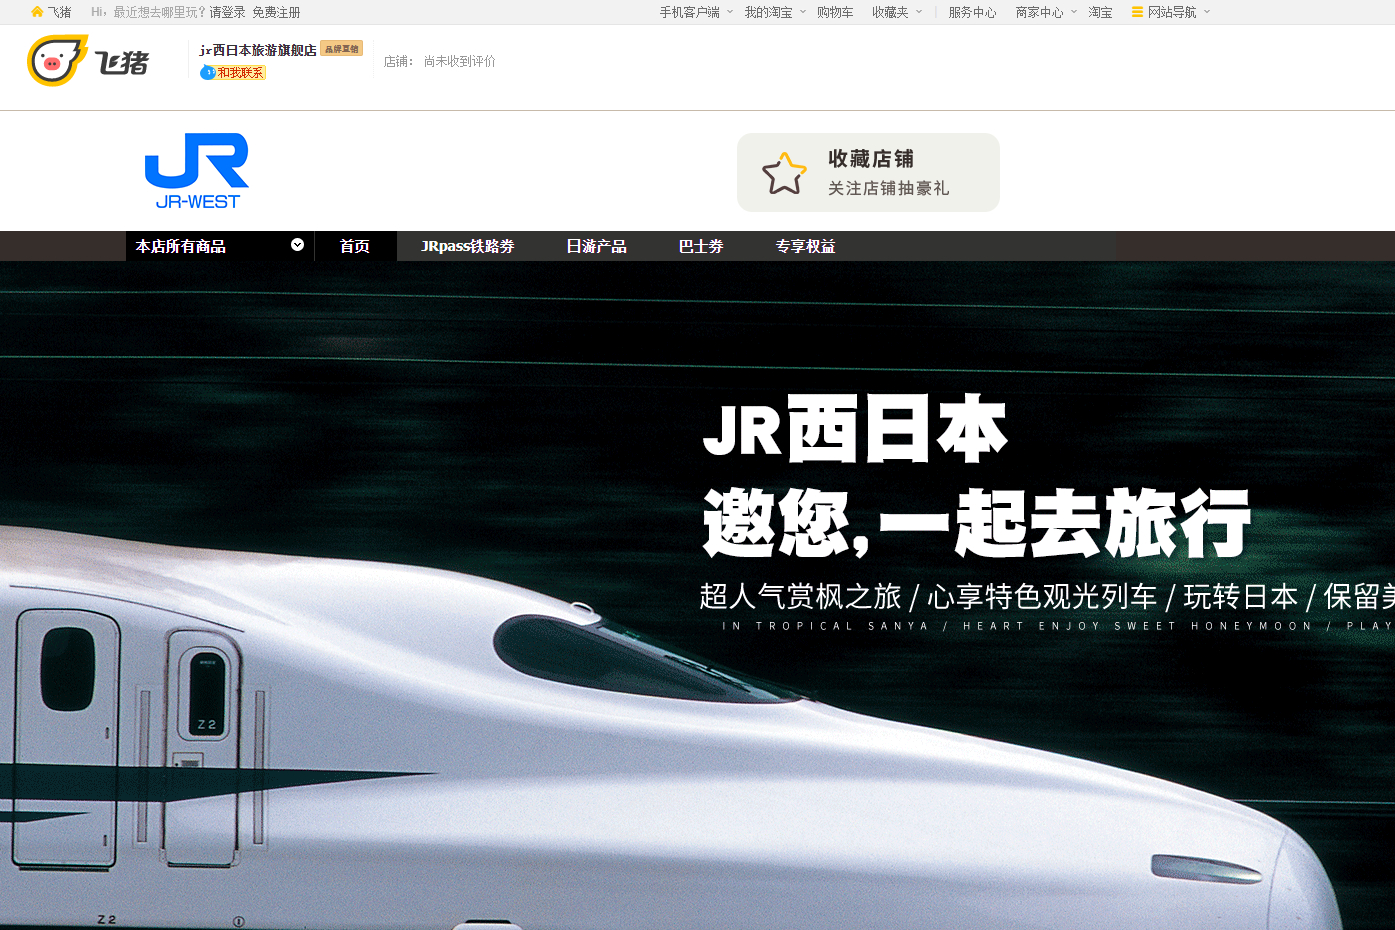 JR西日本、中国向けの観光情報発信でアリババグループと提携